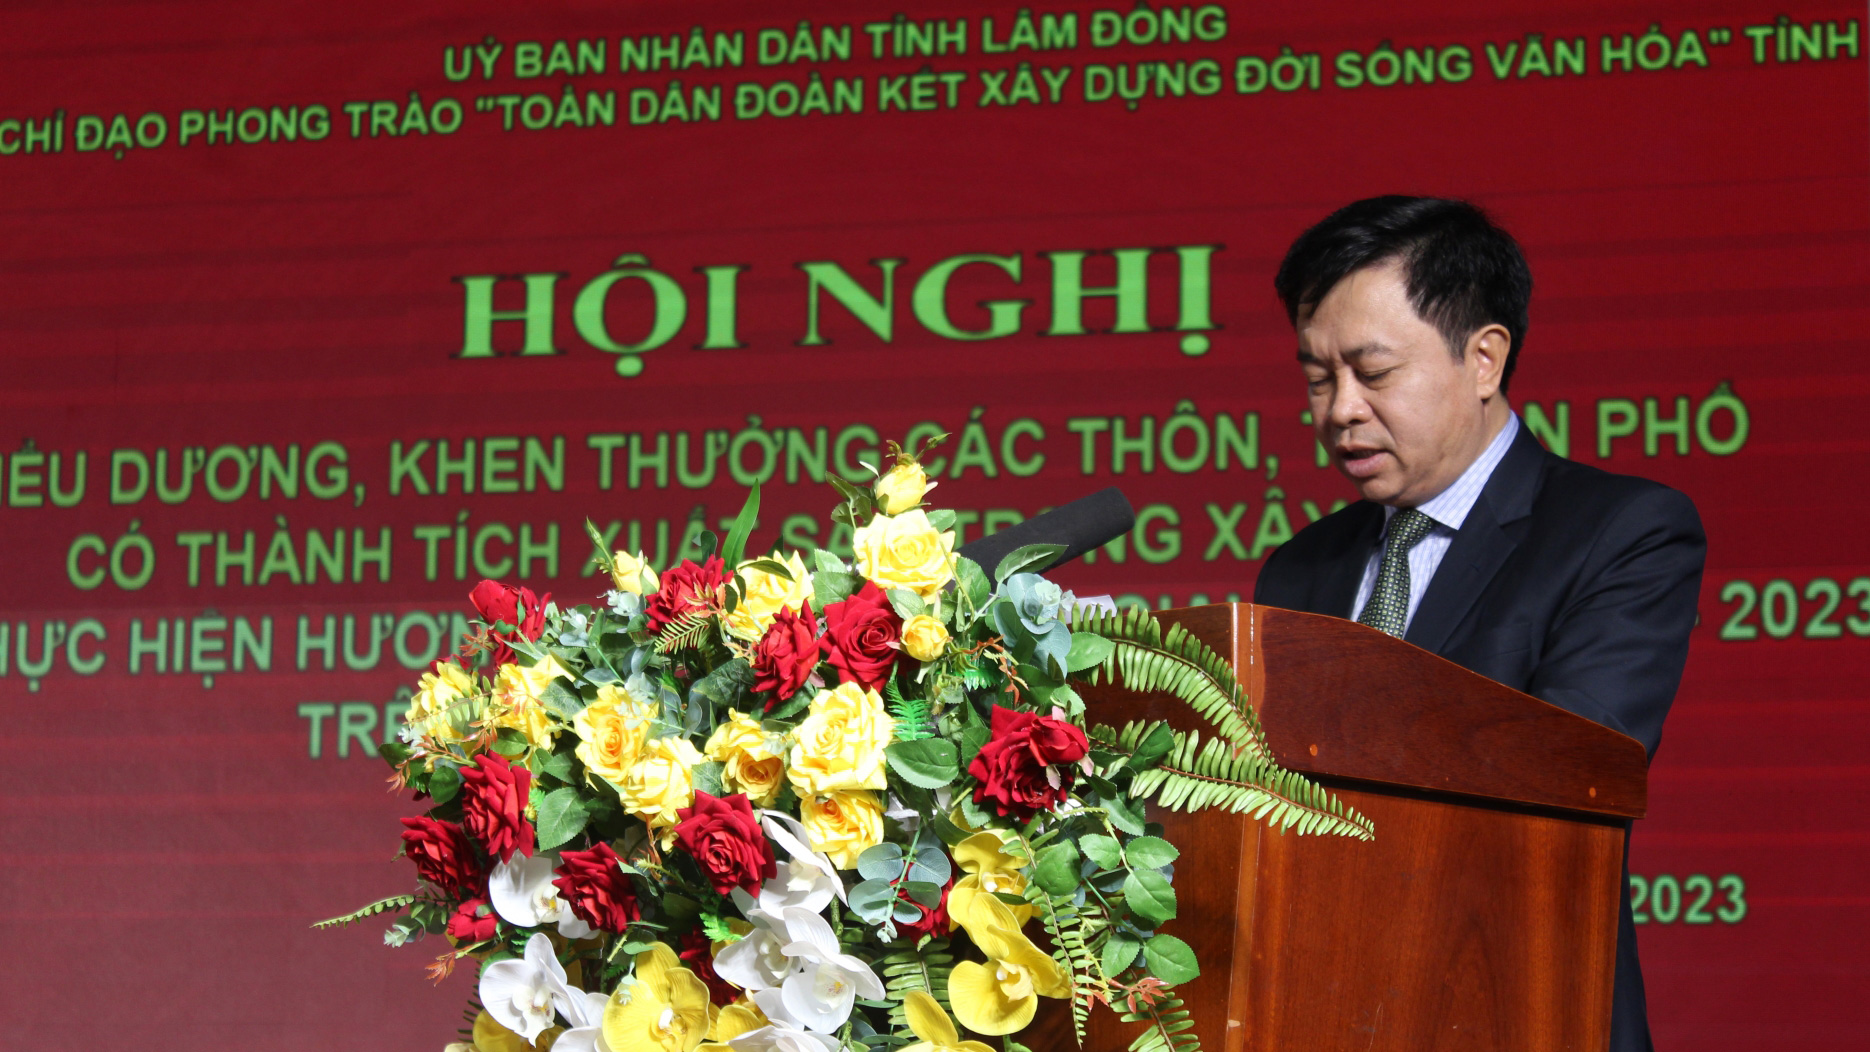 Ông Nguyễn Trung Kiên - Giám đốc Sở Vắn hóa - Thể thao và Du lịch, Phó trưởng Ban Chỉ đạo Phong trào Toàn dân đoàn kết xây dựng đời sống văn hóa tỉnh, biểu dương các khu dân cư xuất sắc